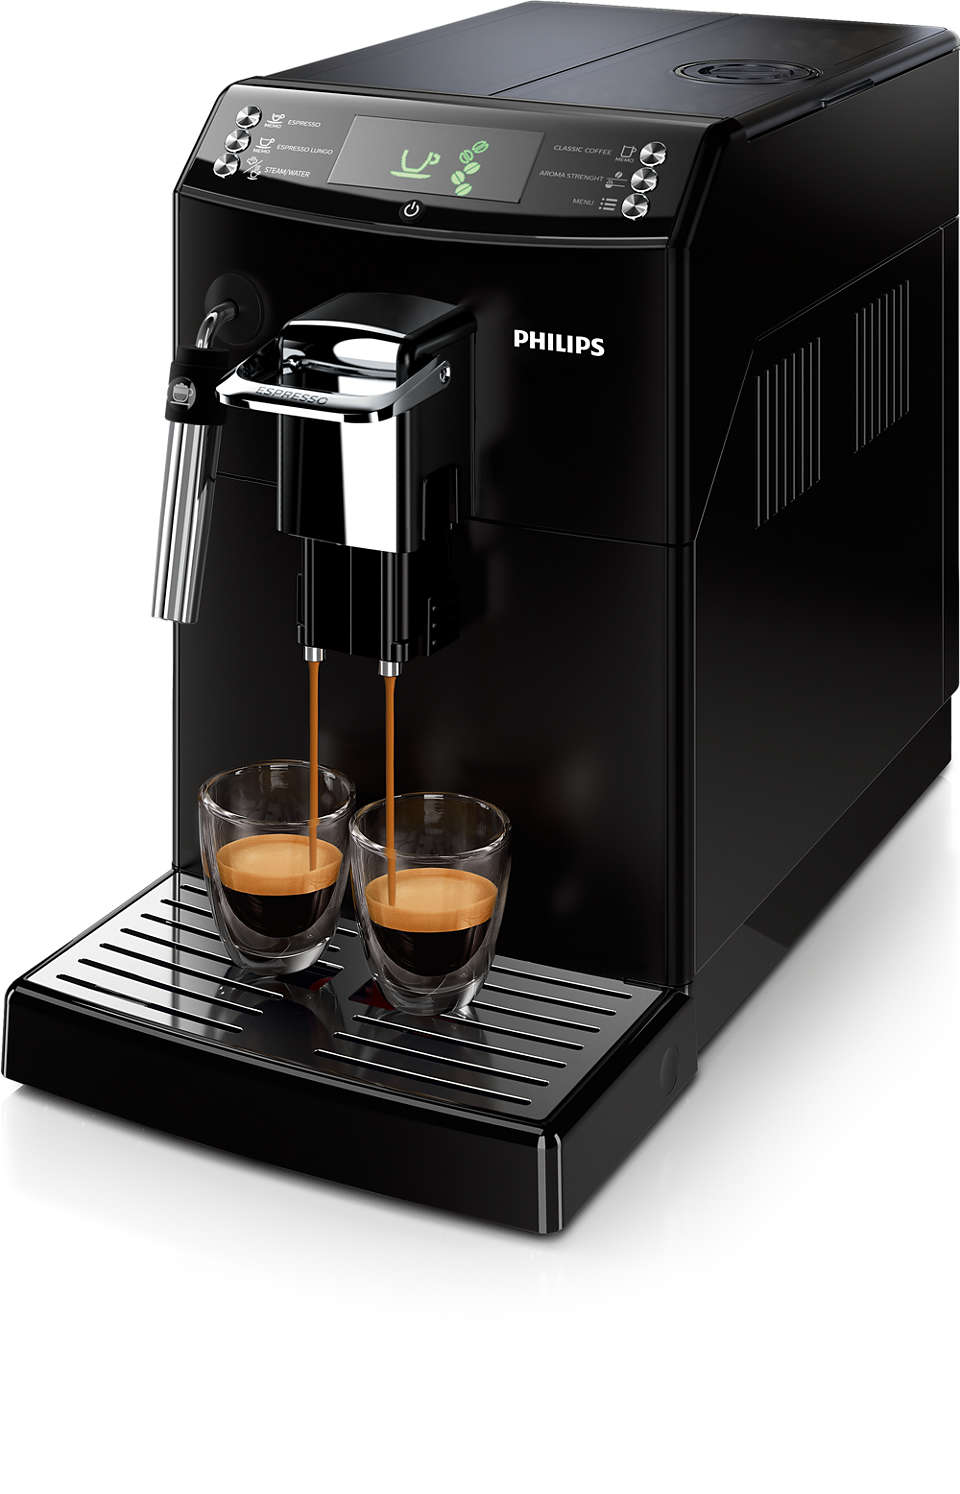 Puiki espreso kava ir filtruotos kavos skonis